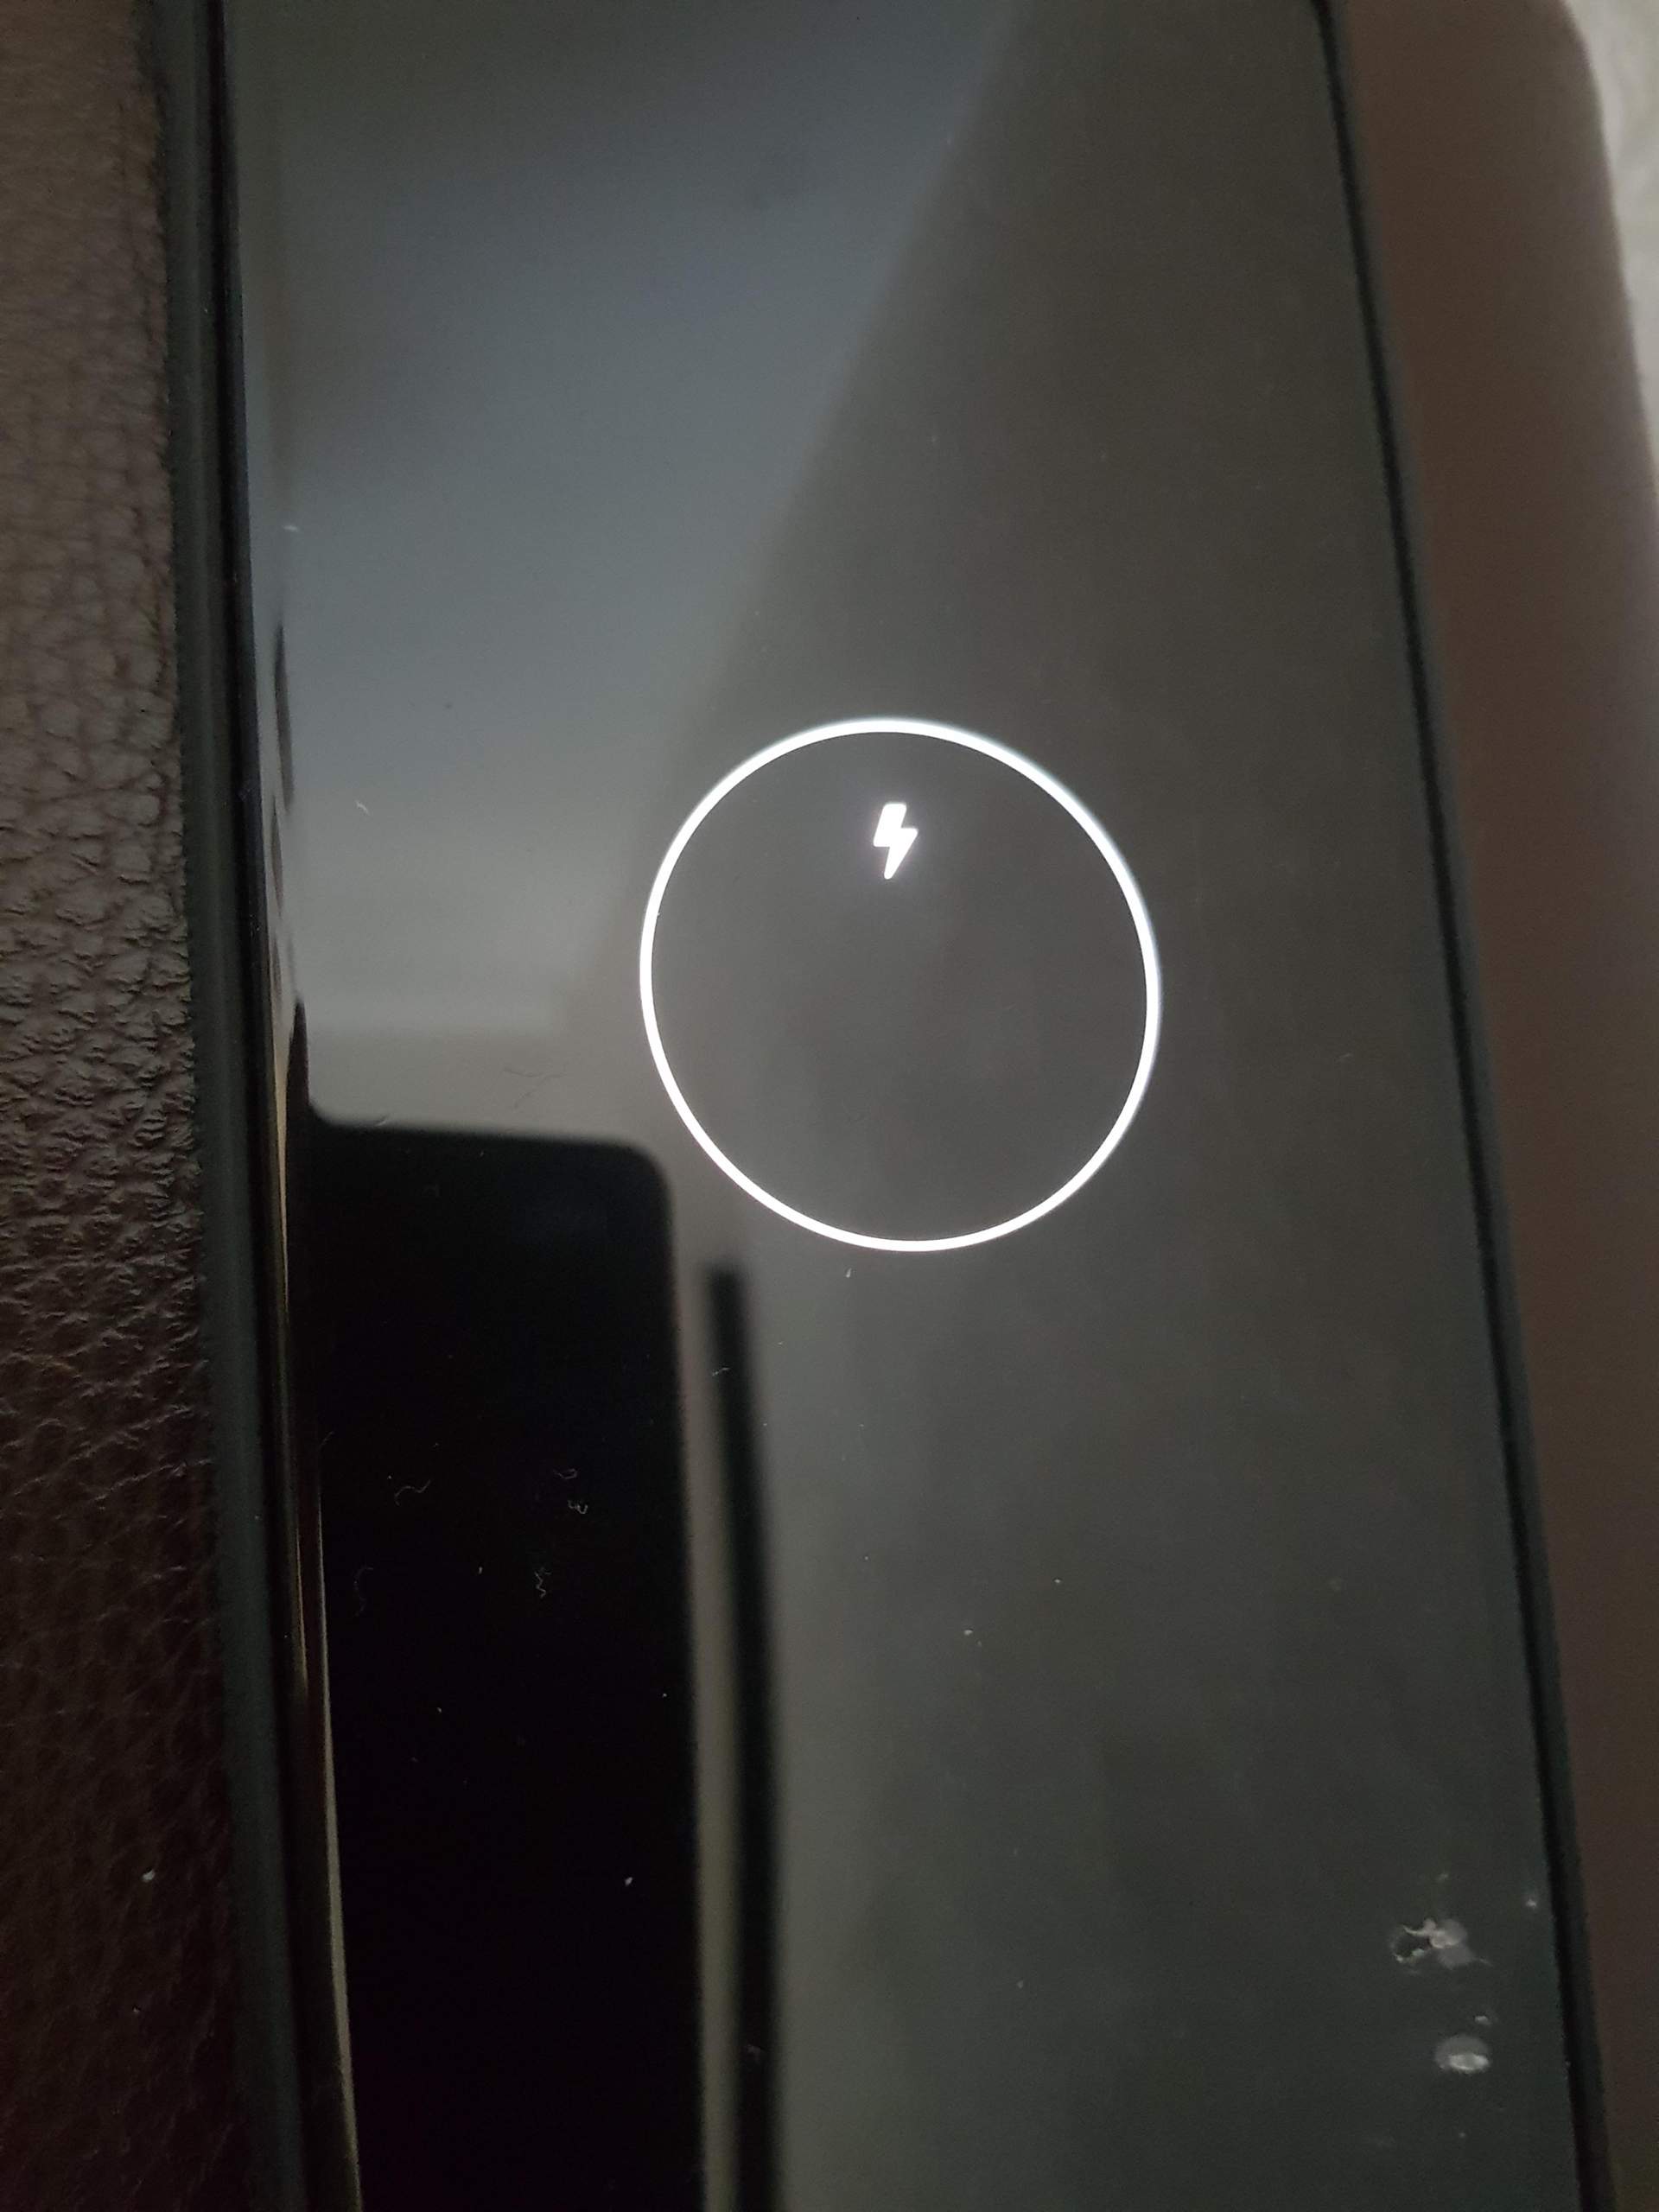 Mein Samsung Galaxy Note 20 Ultra startet nicht (Kreis mit einen Blitz